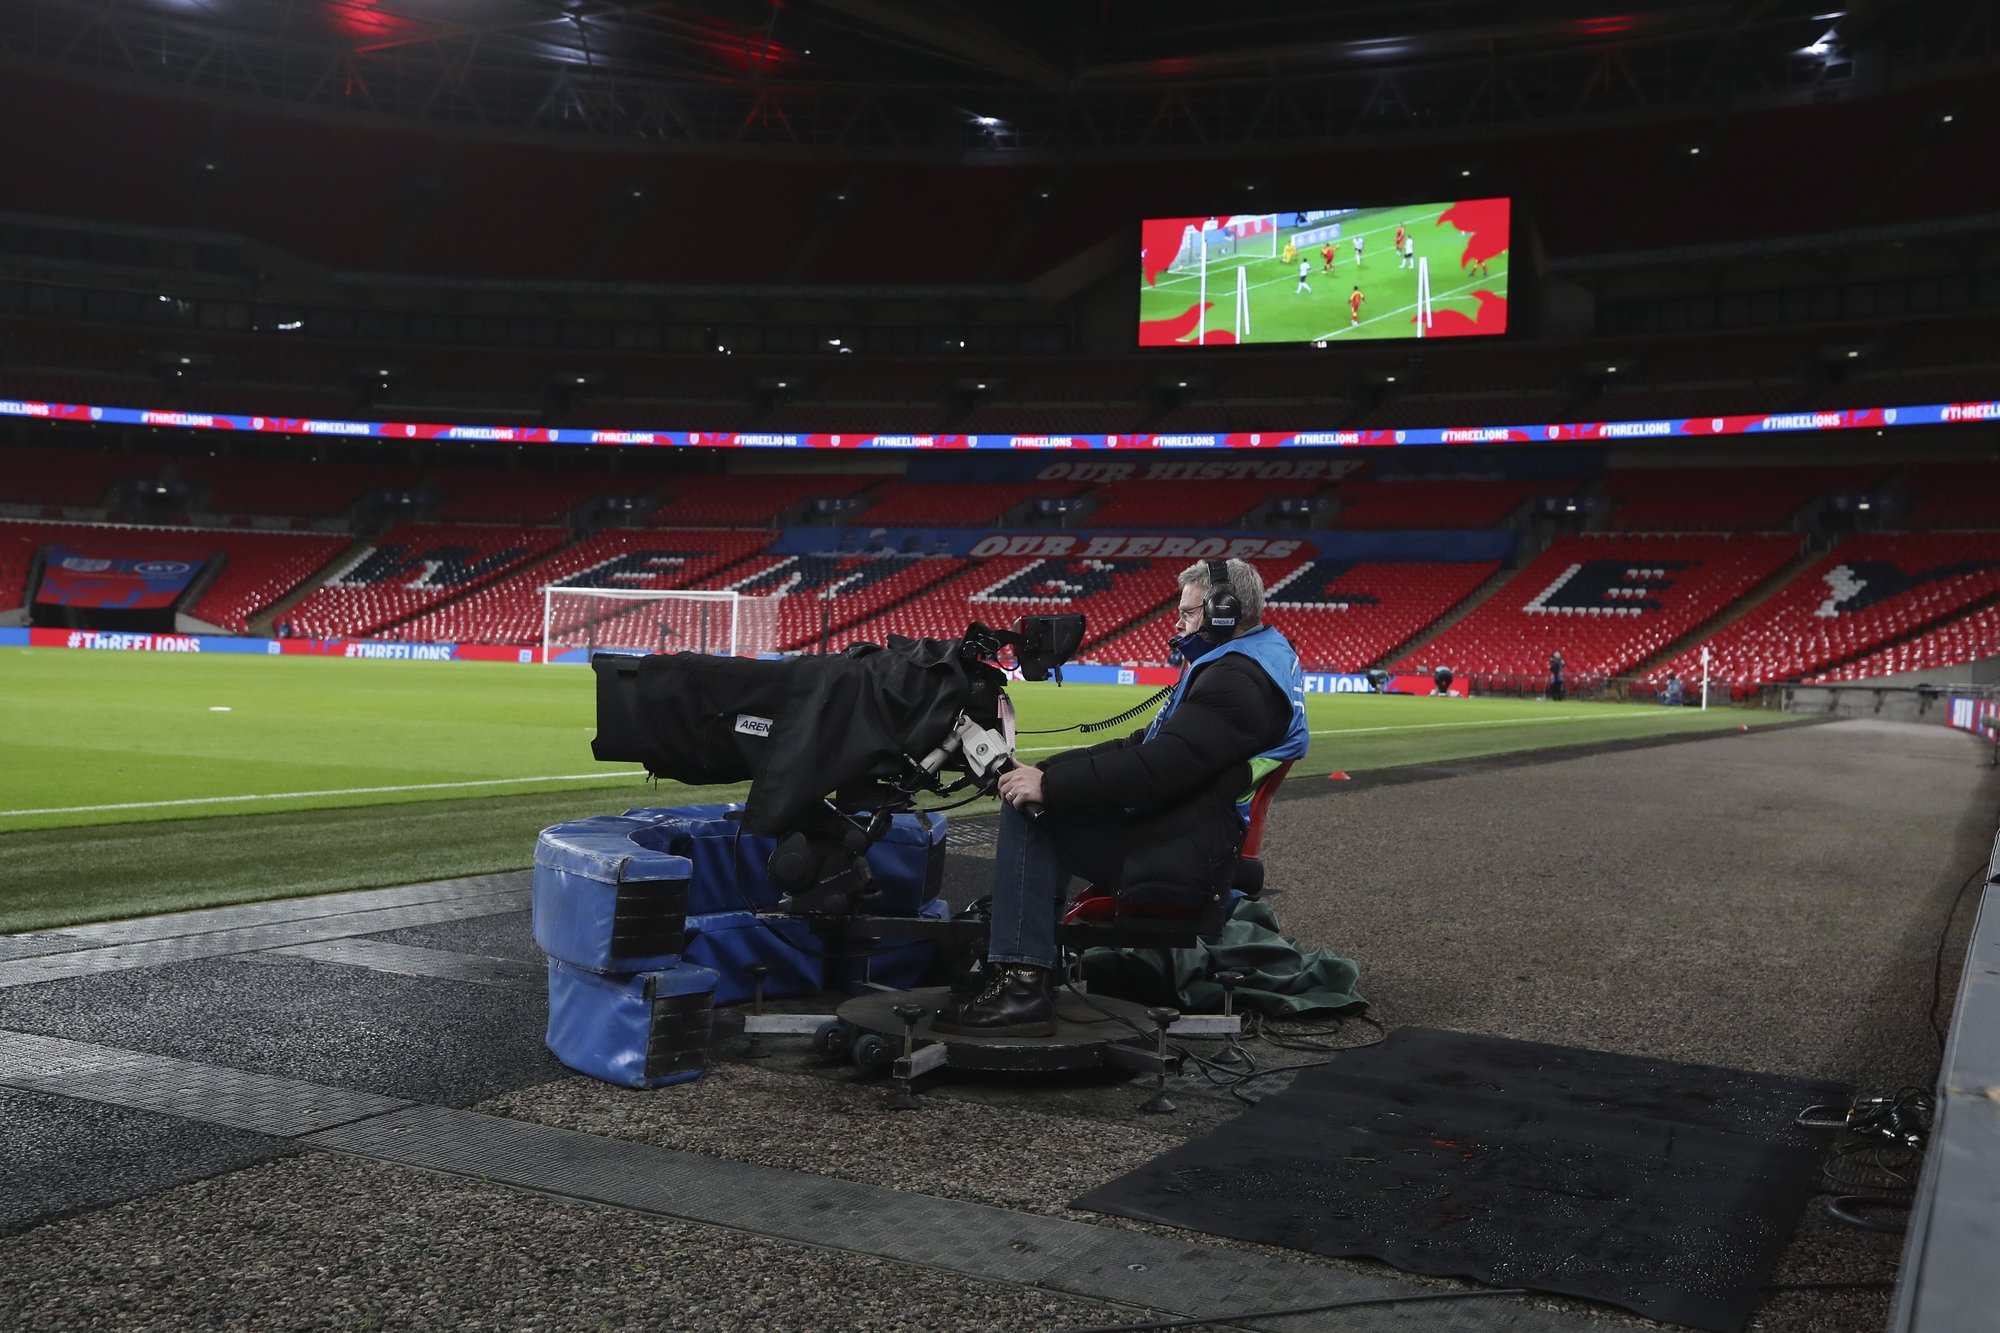 Les images de match de football dans les stades vides n'empêchent pas les téléspectateurs de suivre ces rencontres.